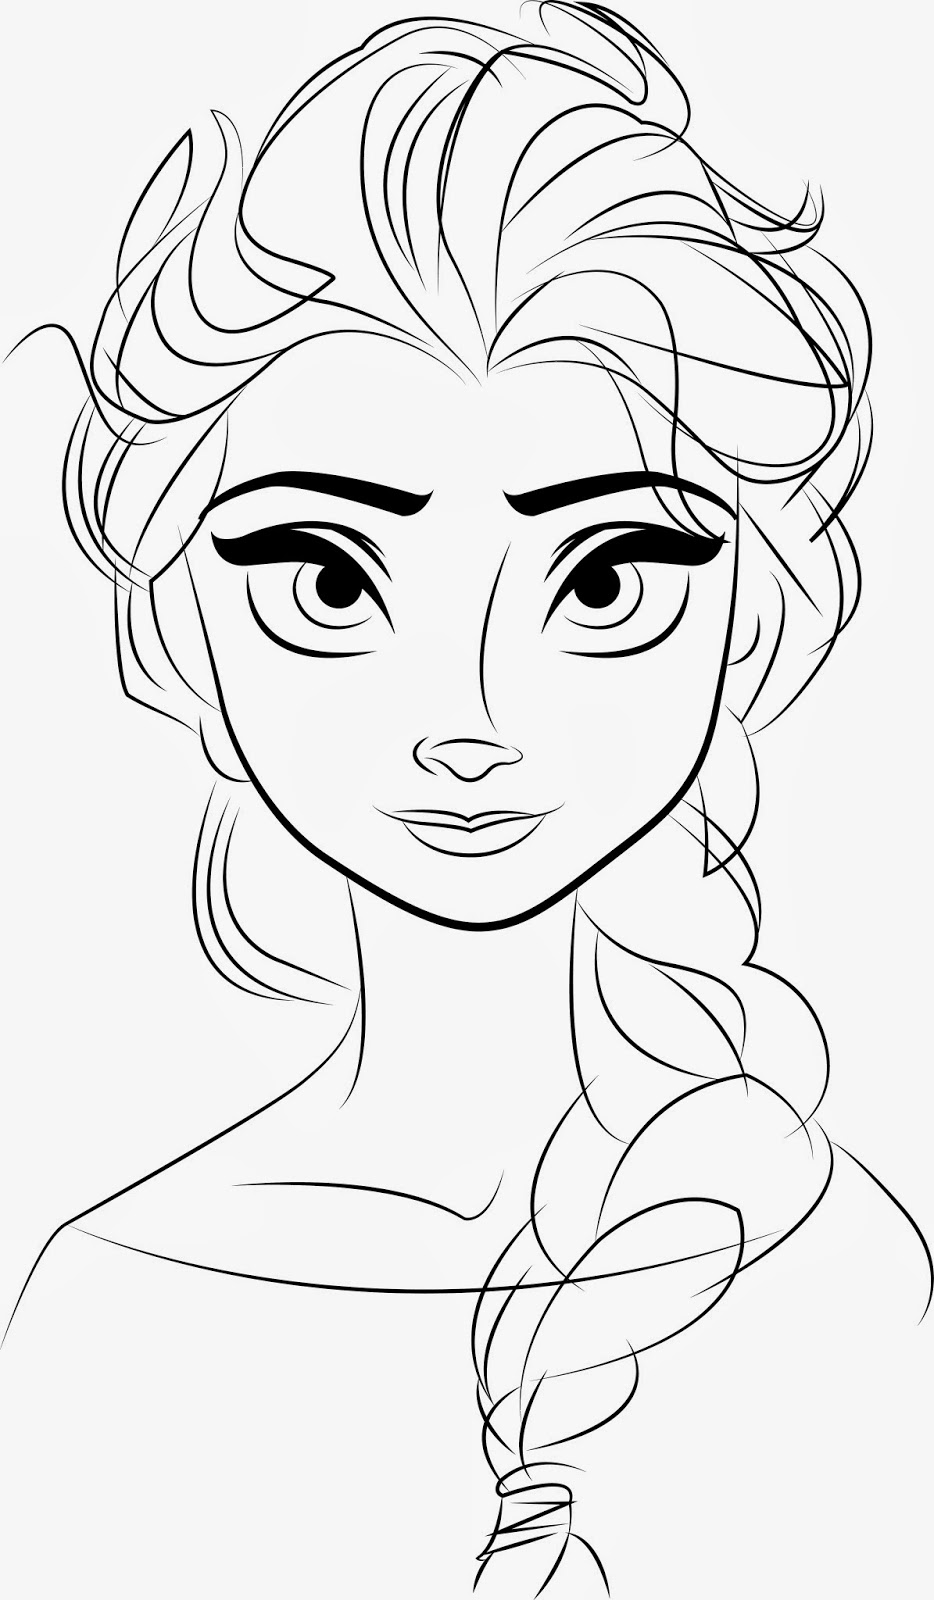 Elsa Outline Drawing / Elsa Drawing Outline at